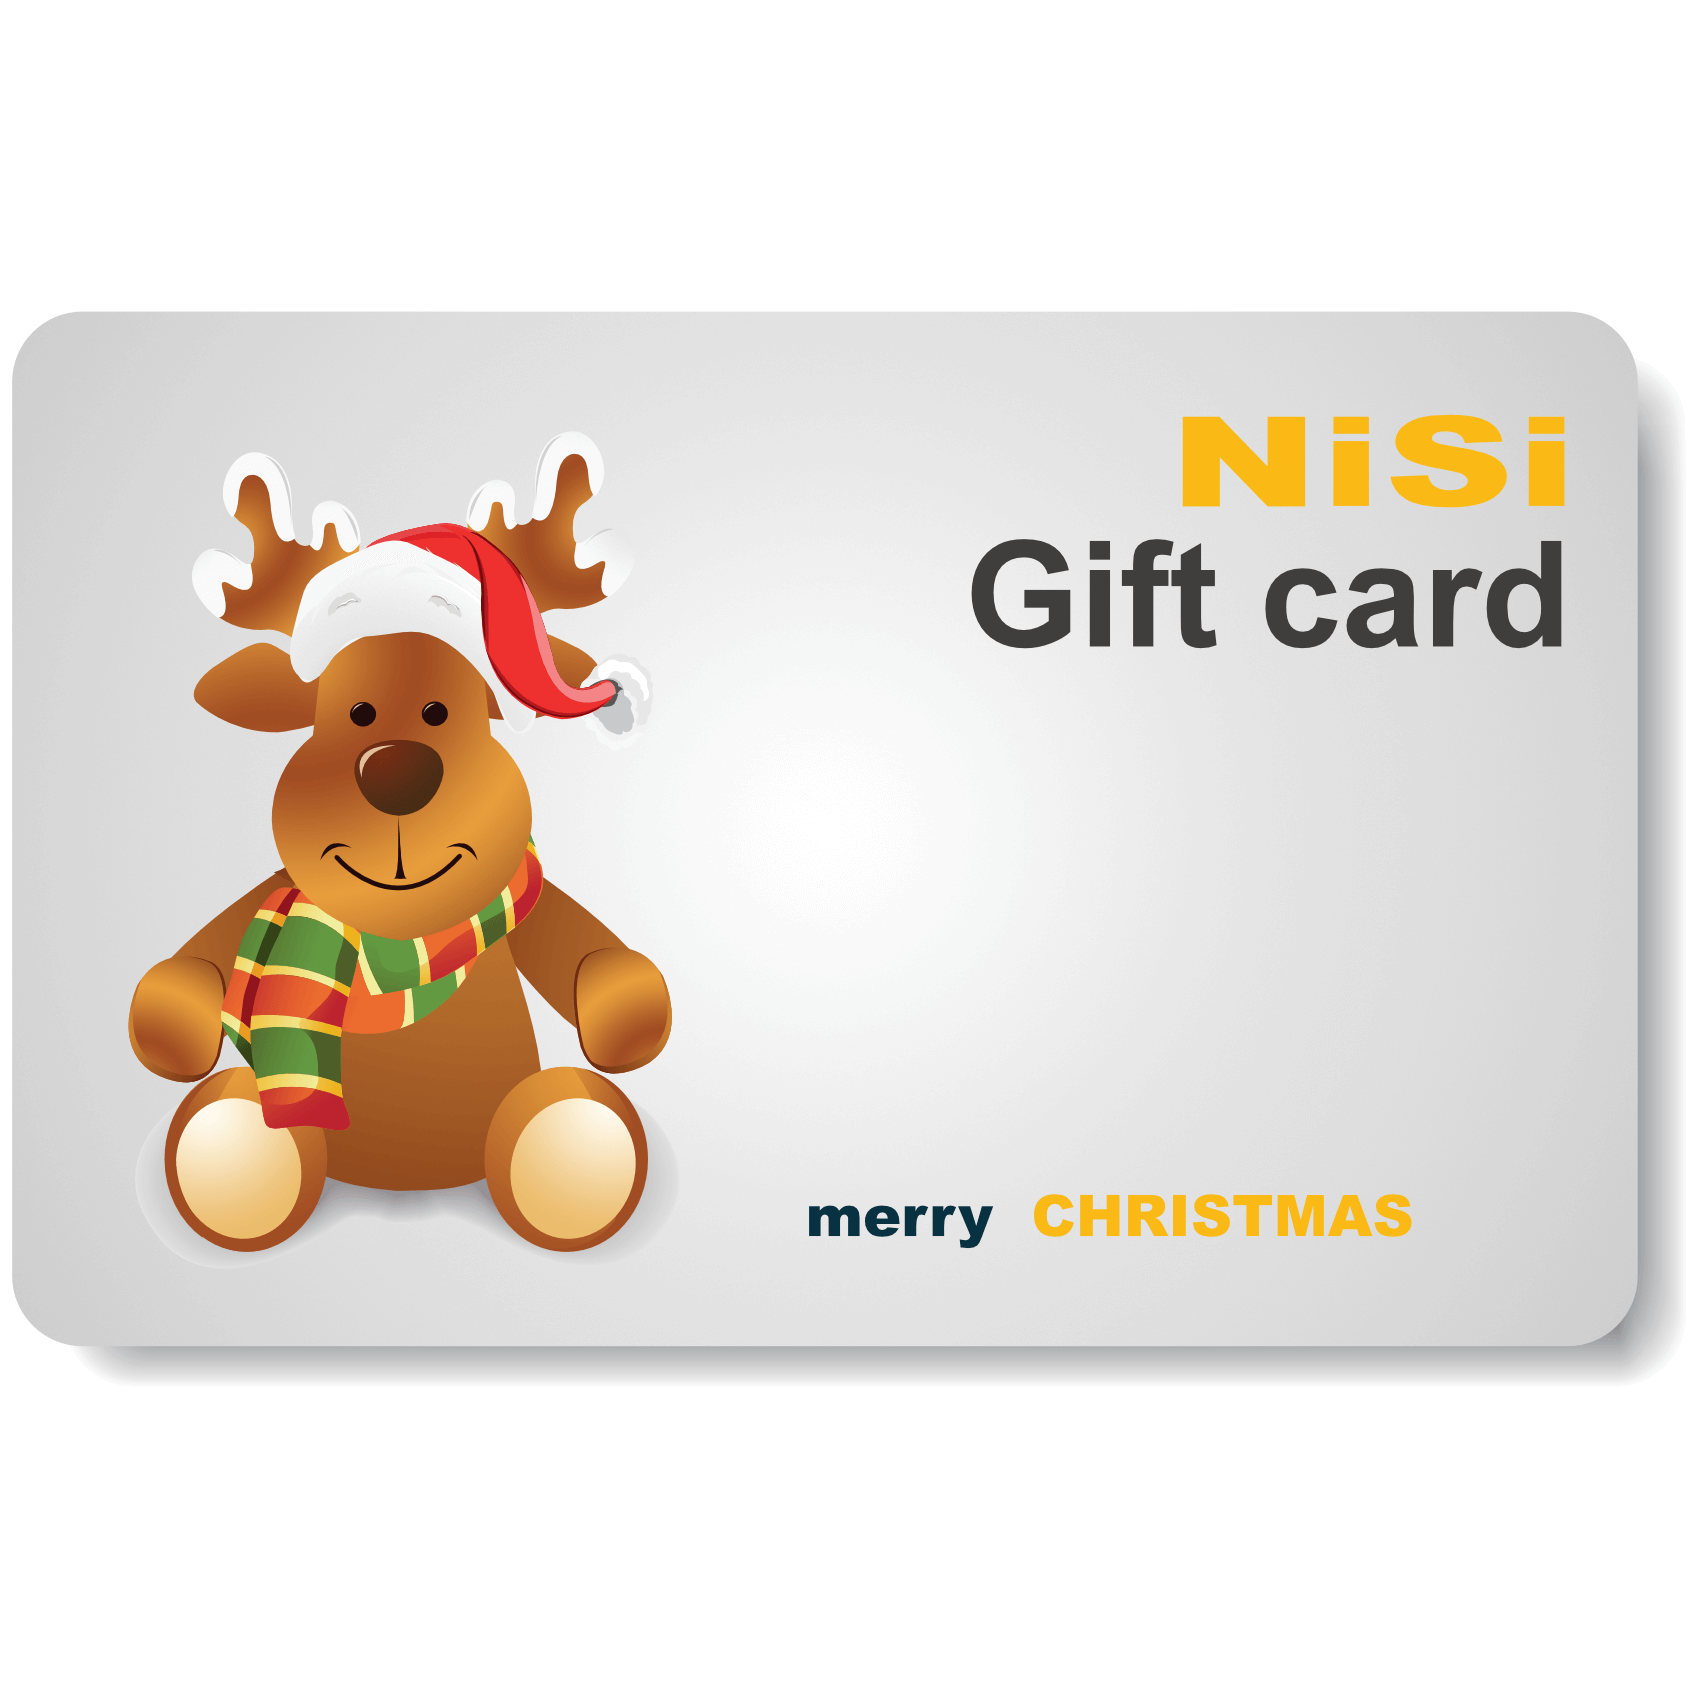 Gift this product | NiSi Optics USA | 3